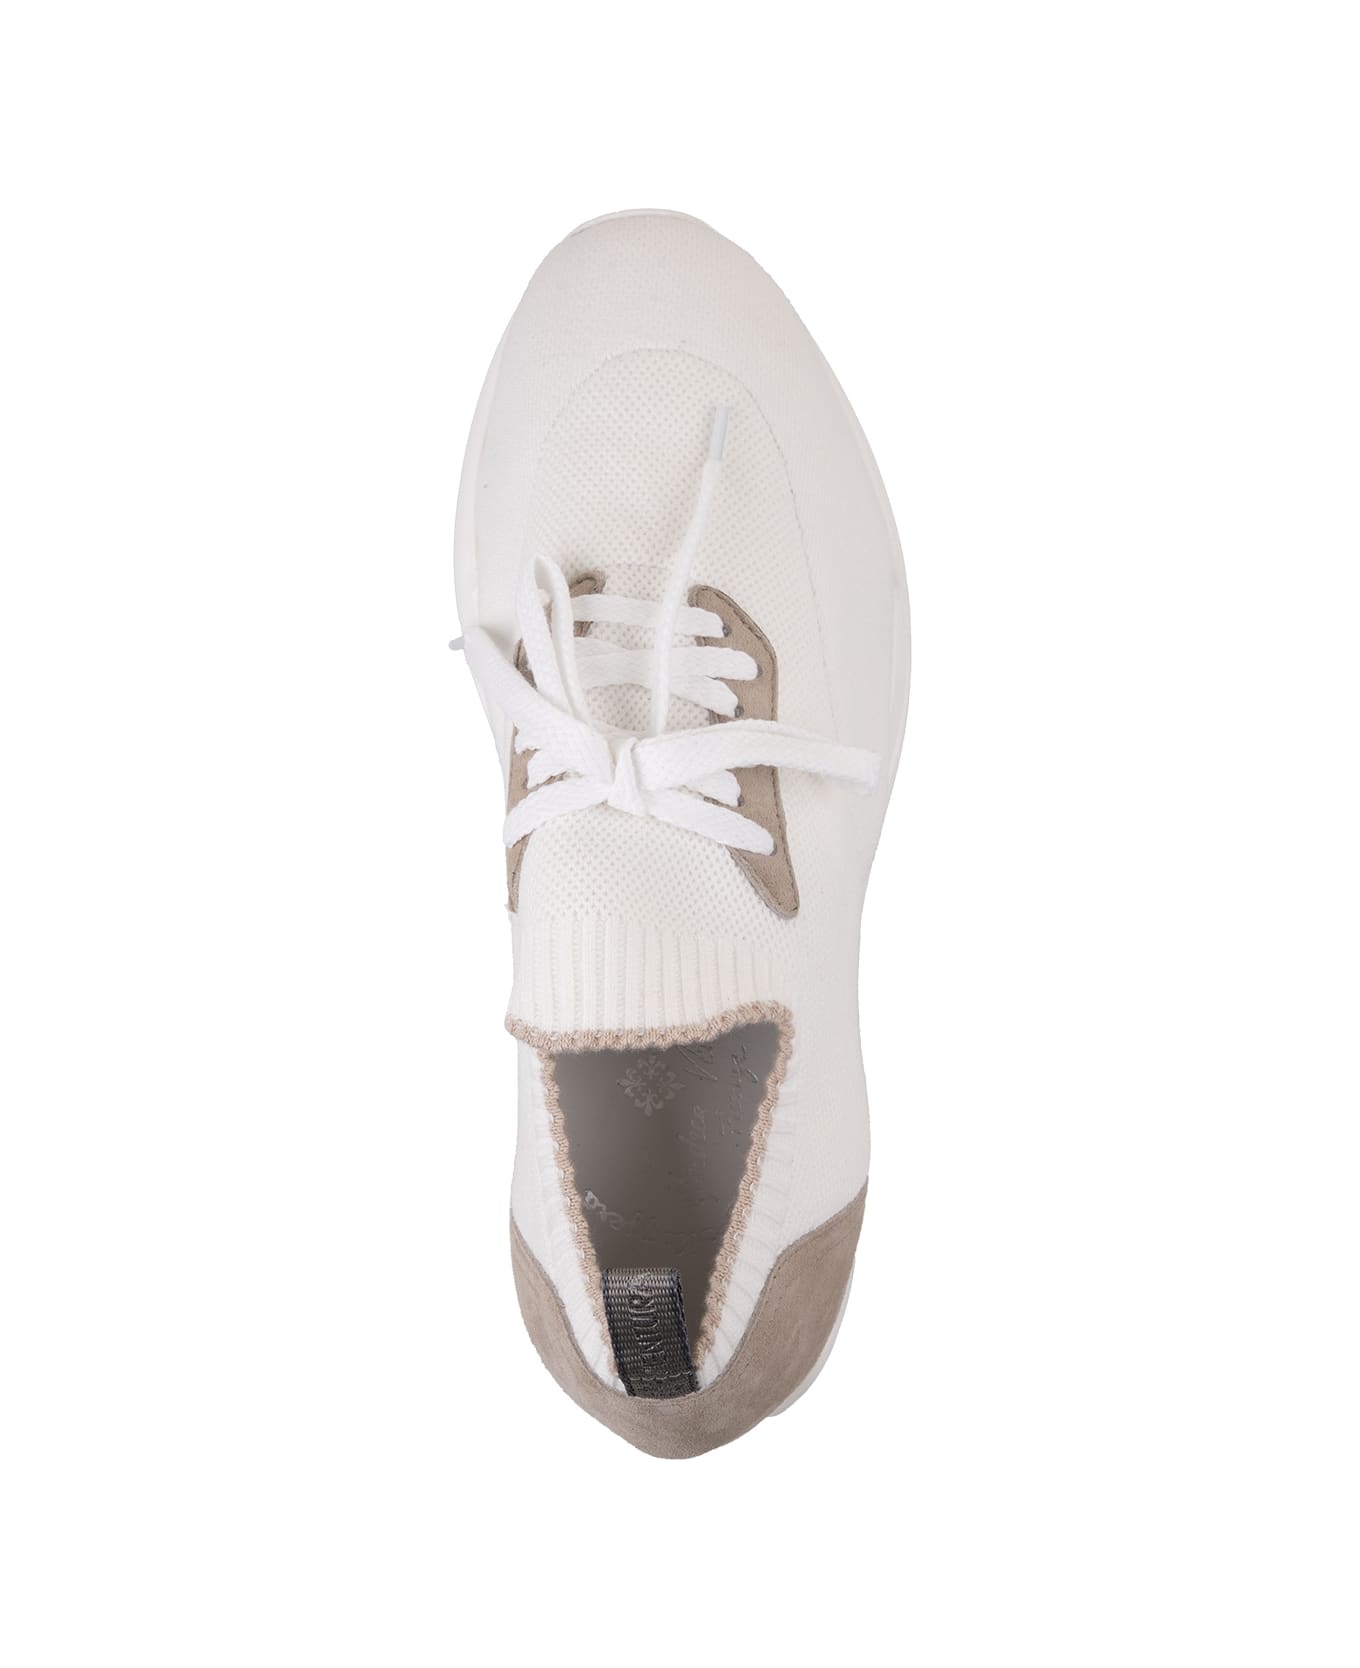 Andrea Ventura W-dragon Sneakers In White And Beige Fashion Fabric - White